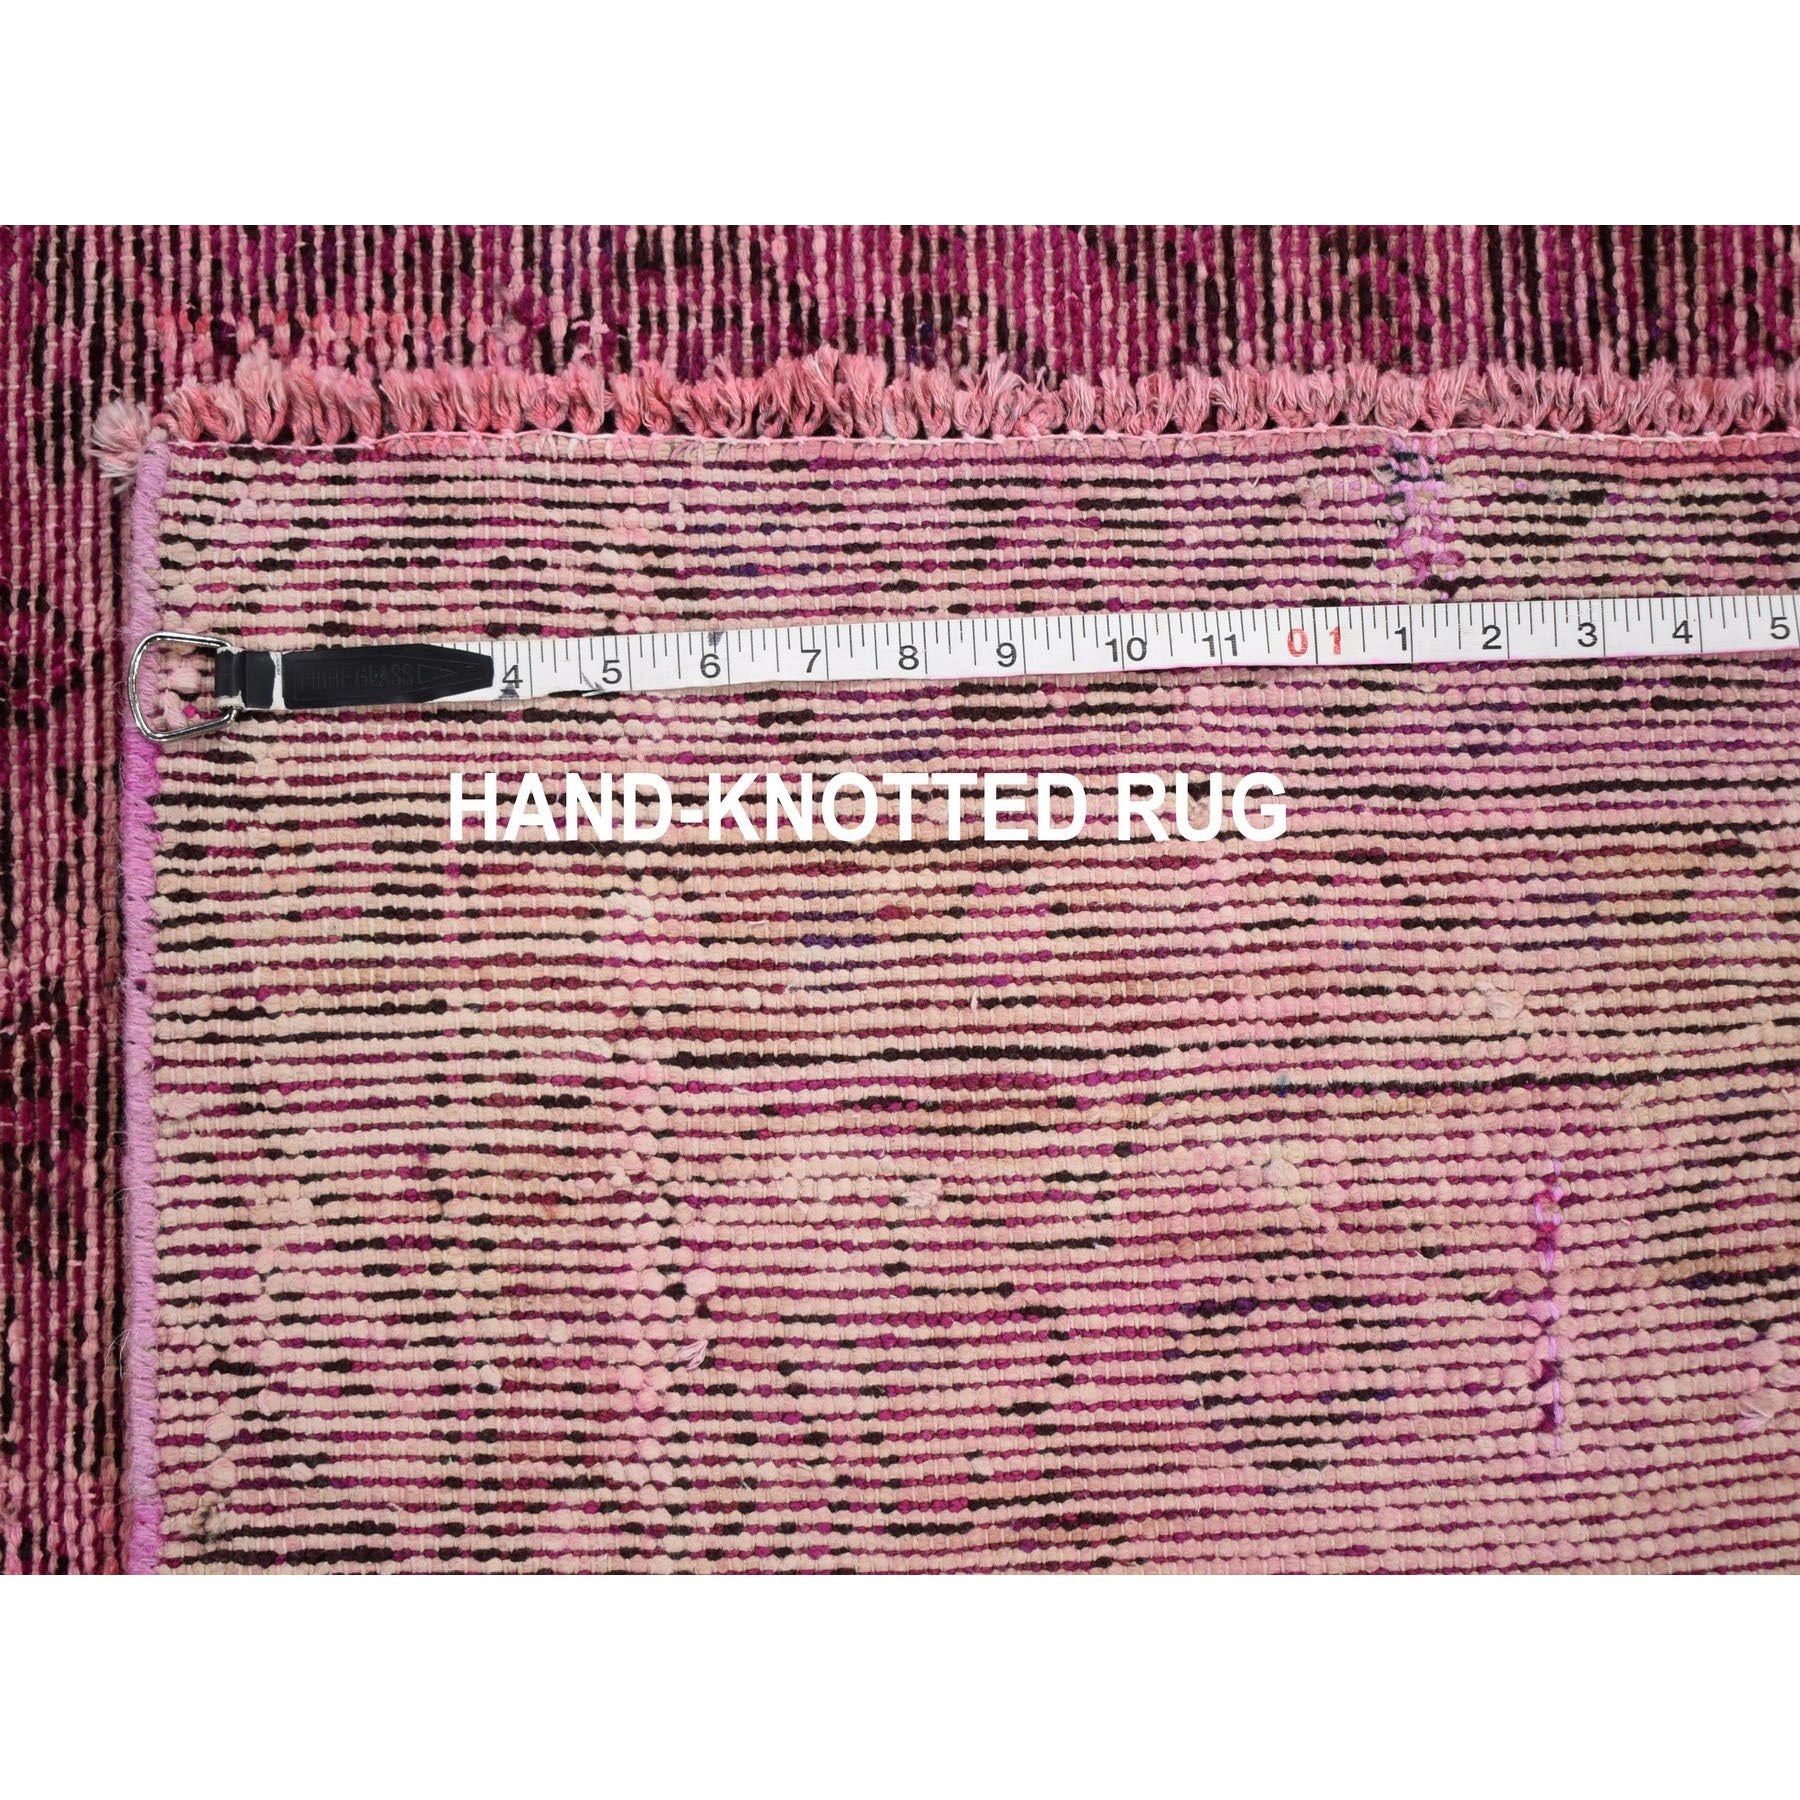 Hand Knotted Vintage Runner > Design# CCSR59198 > Size: 4'-7" x 9'-8"